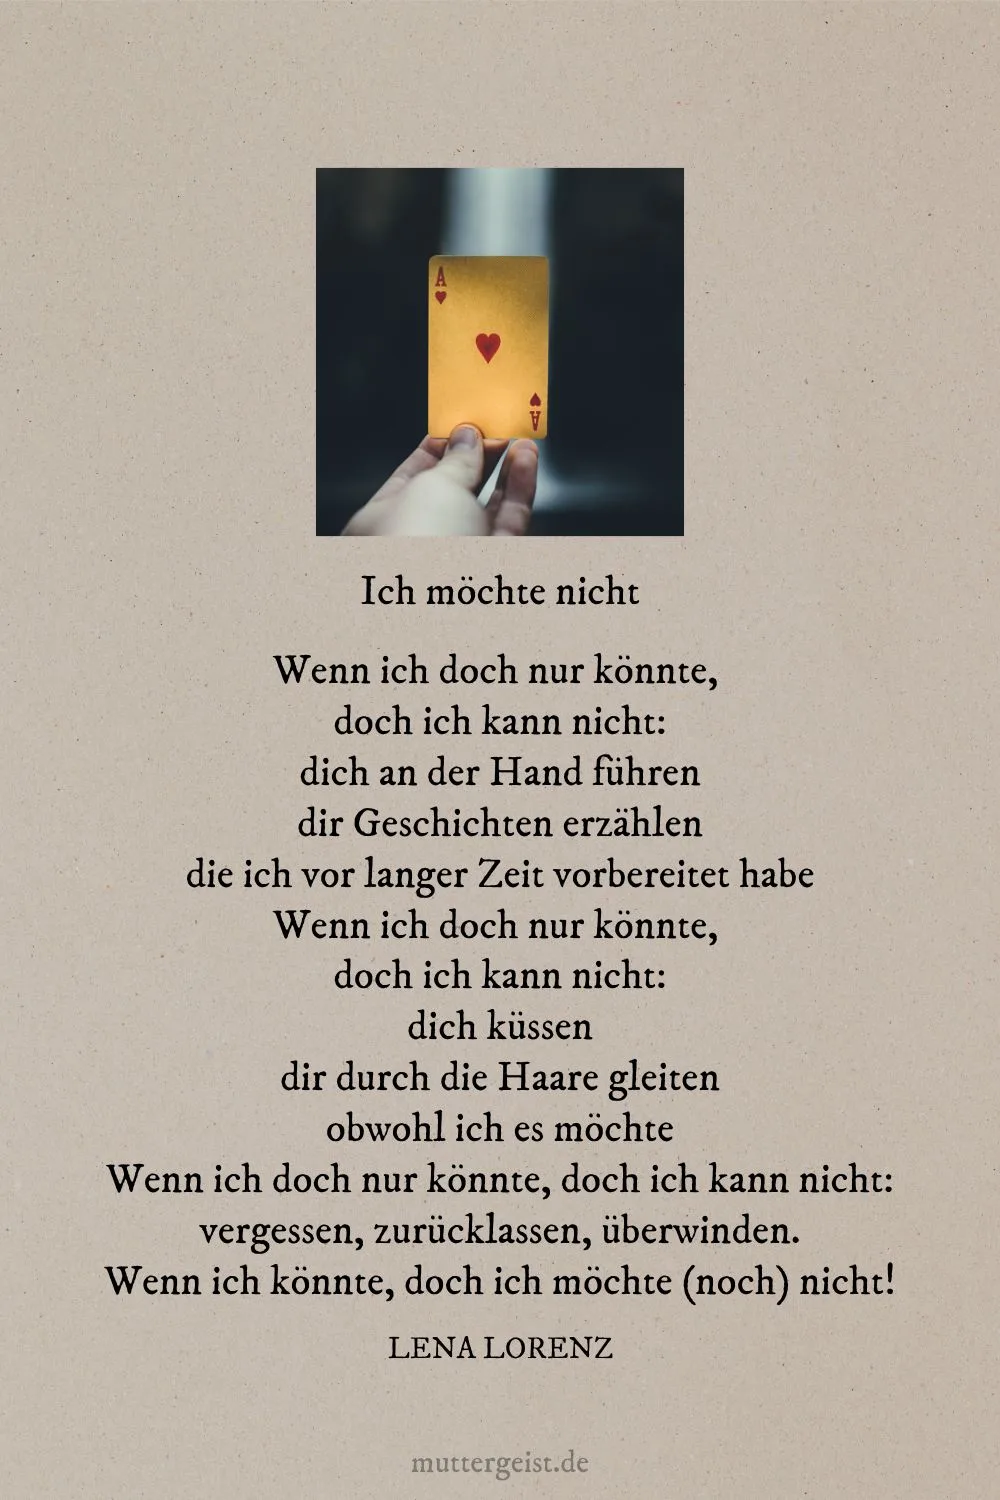 Liebesgedicht geschrieben von Lena Lorenz